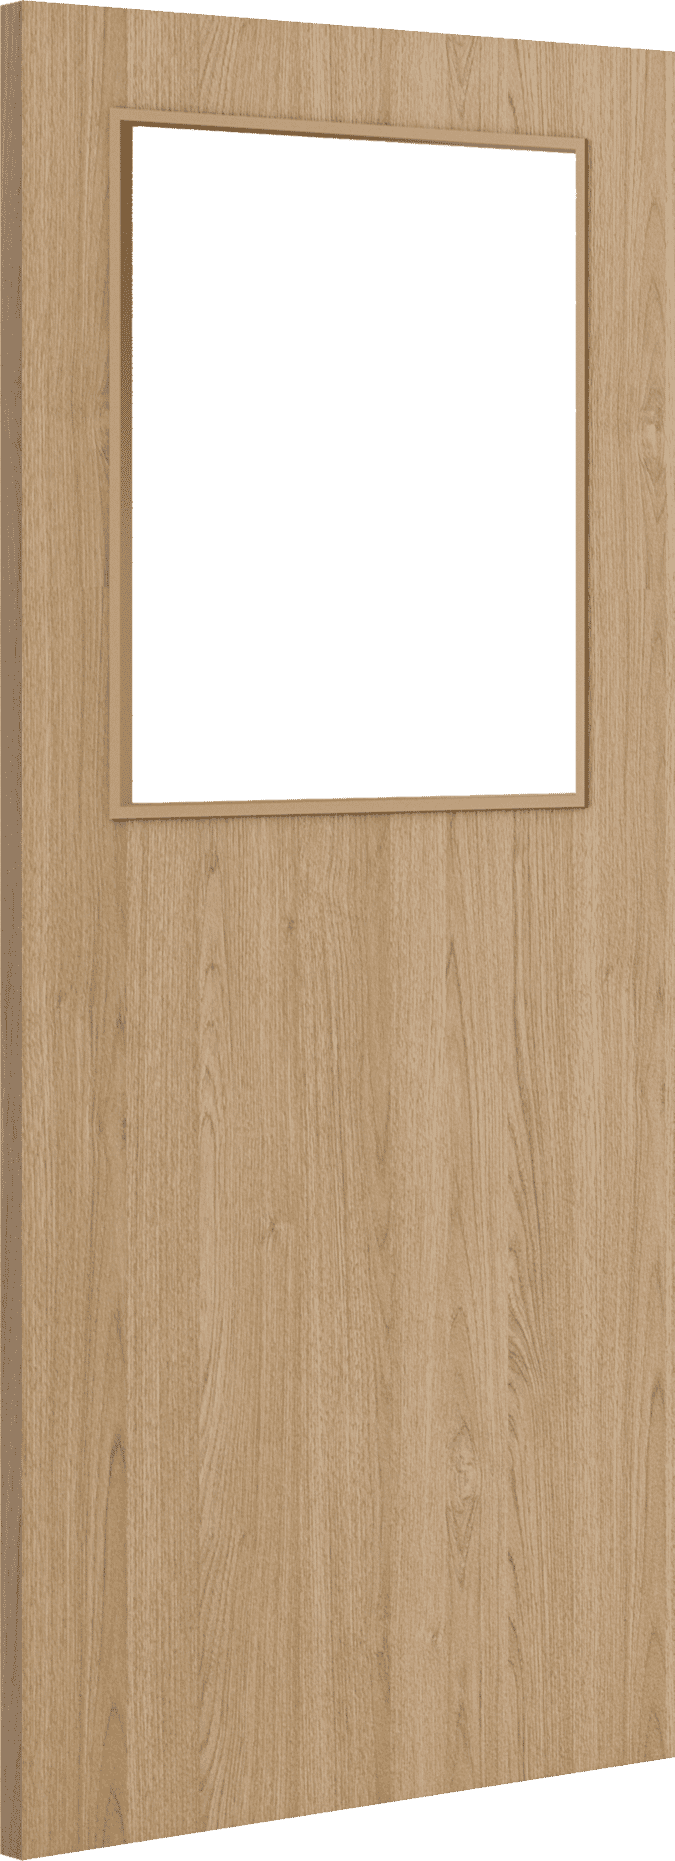 2040mm x 826mm x 54mm Architectural Oak 01 Clear Glazed - Prefinished FD60 Fire Door Blank